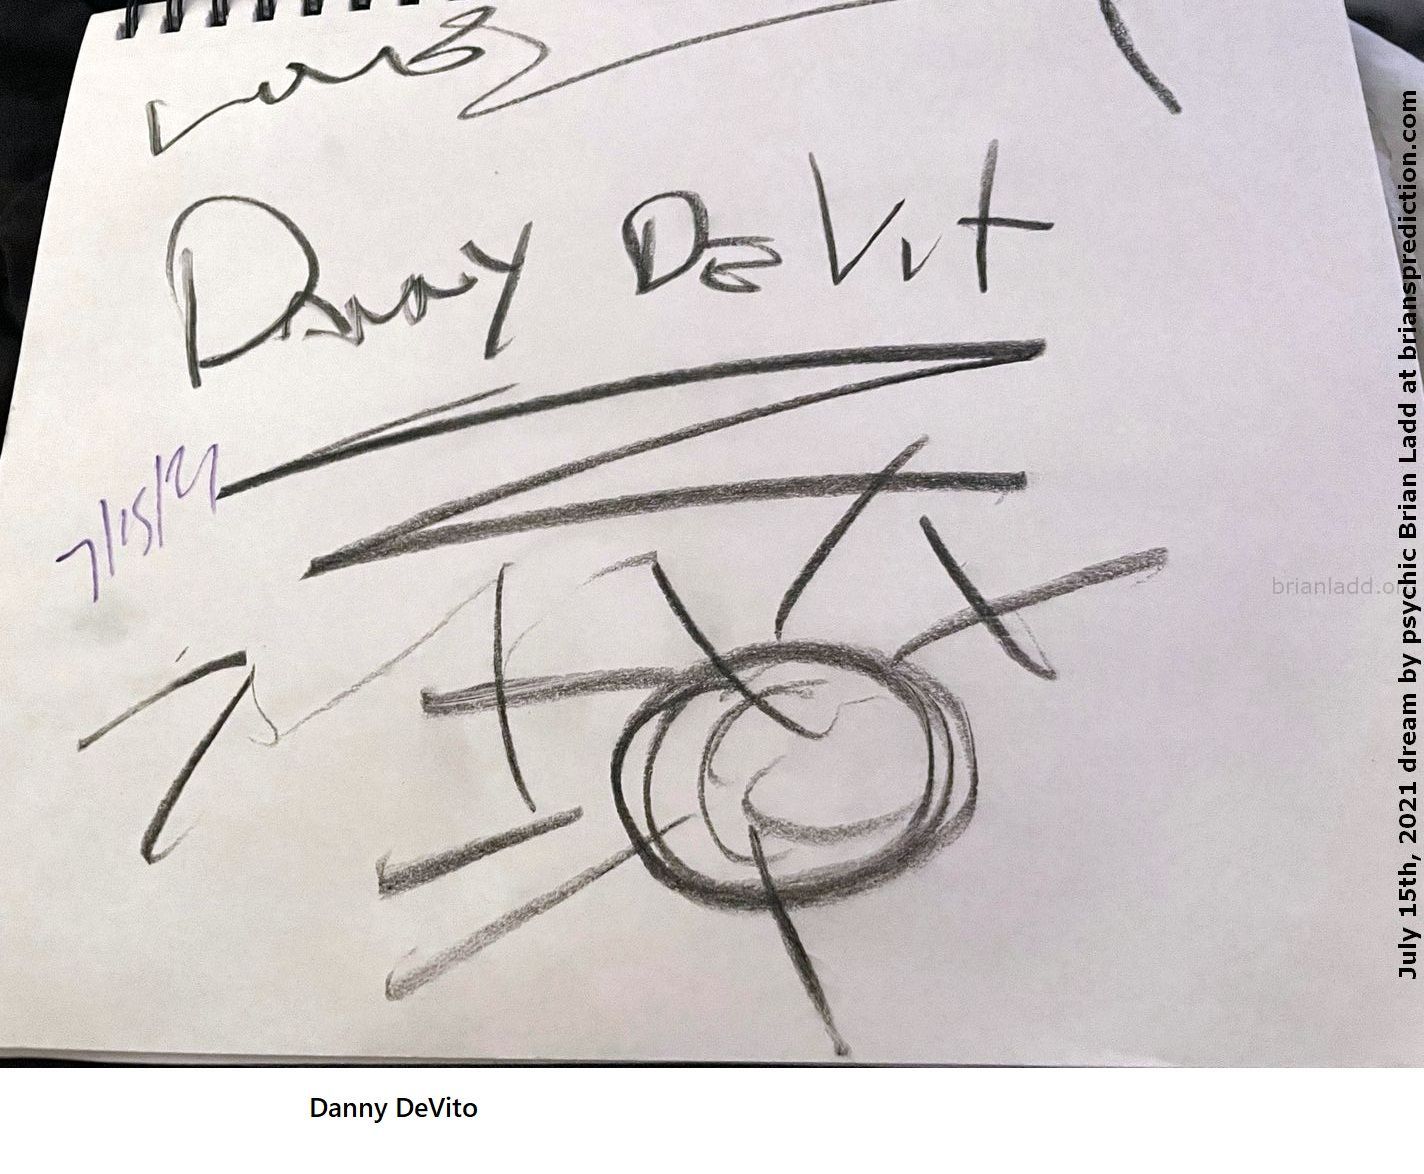 15 July 2021 2 Danny Devito  - Danny DeVito...
Danny DeVito.
